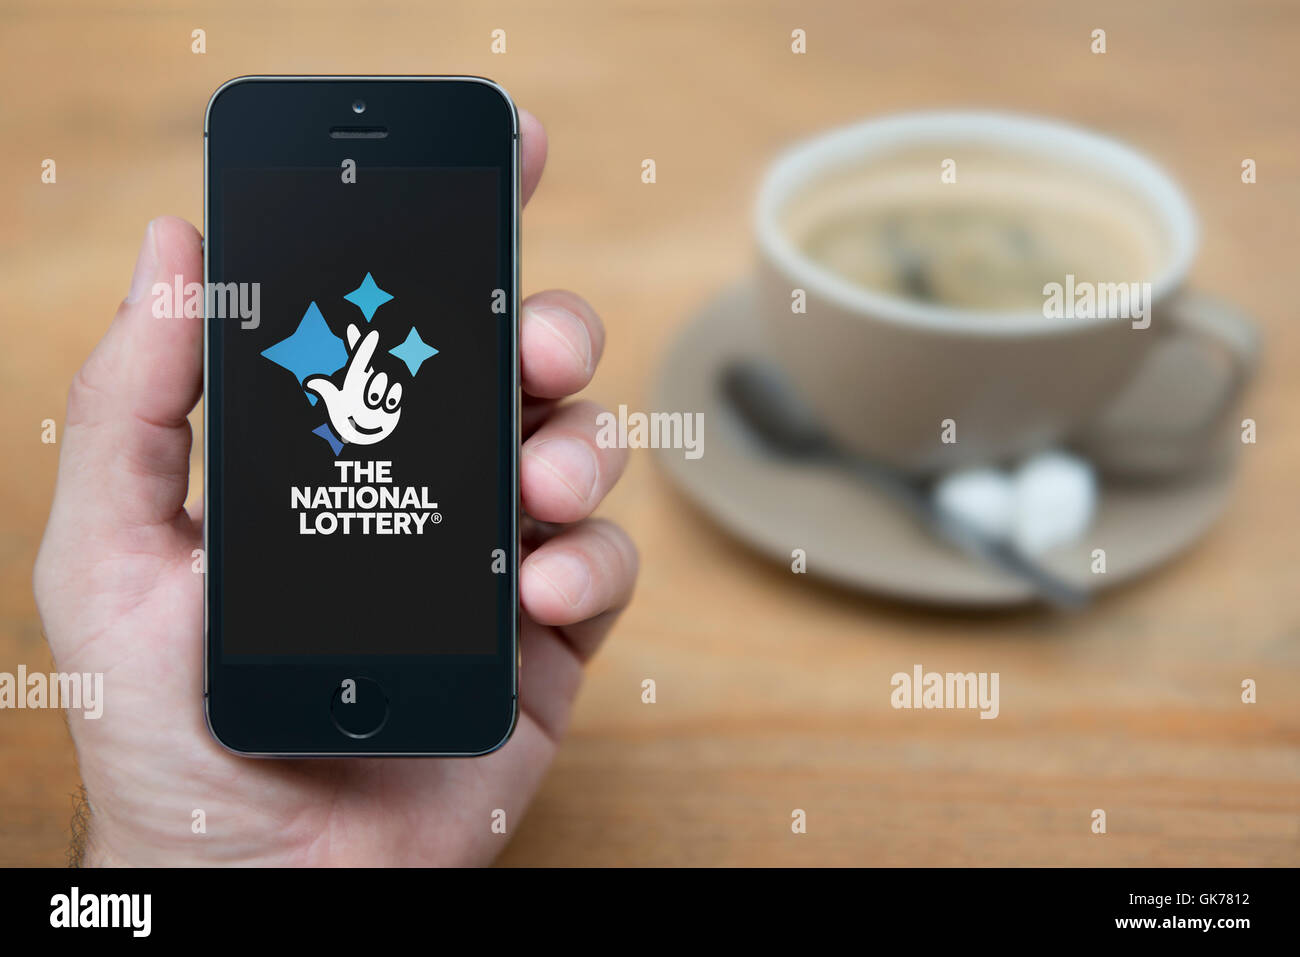 Un homme se penche sur son iPhone qui affiche le logo de la loterie nationale, alors qu'assis avec une tasse de café (usage éditorial uniquement). Banque D'Images